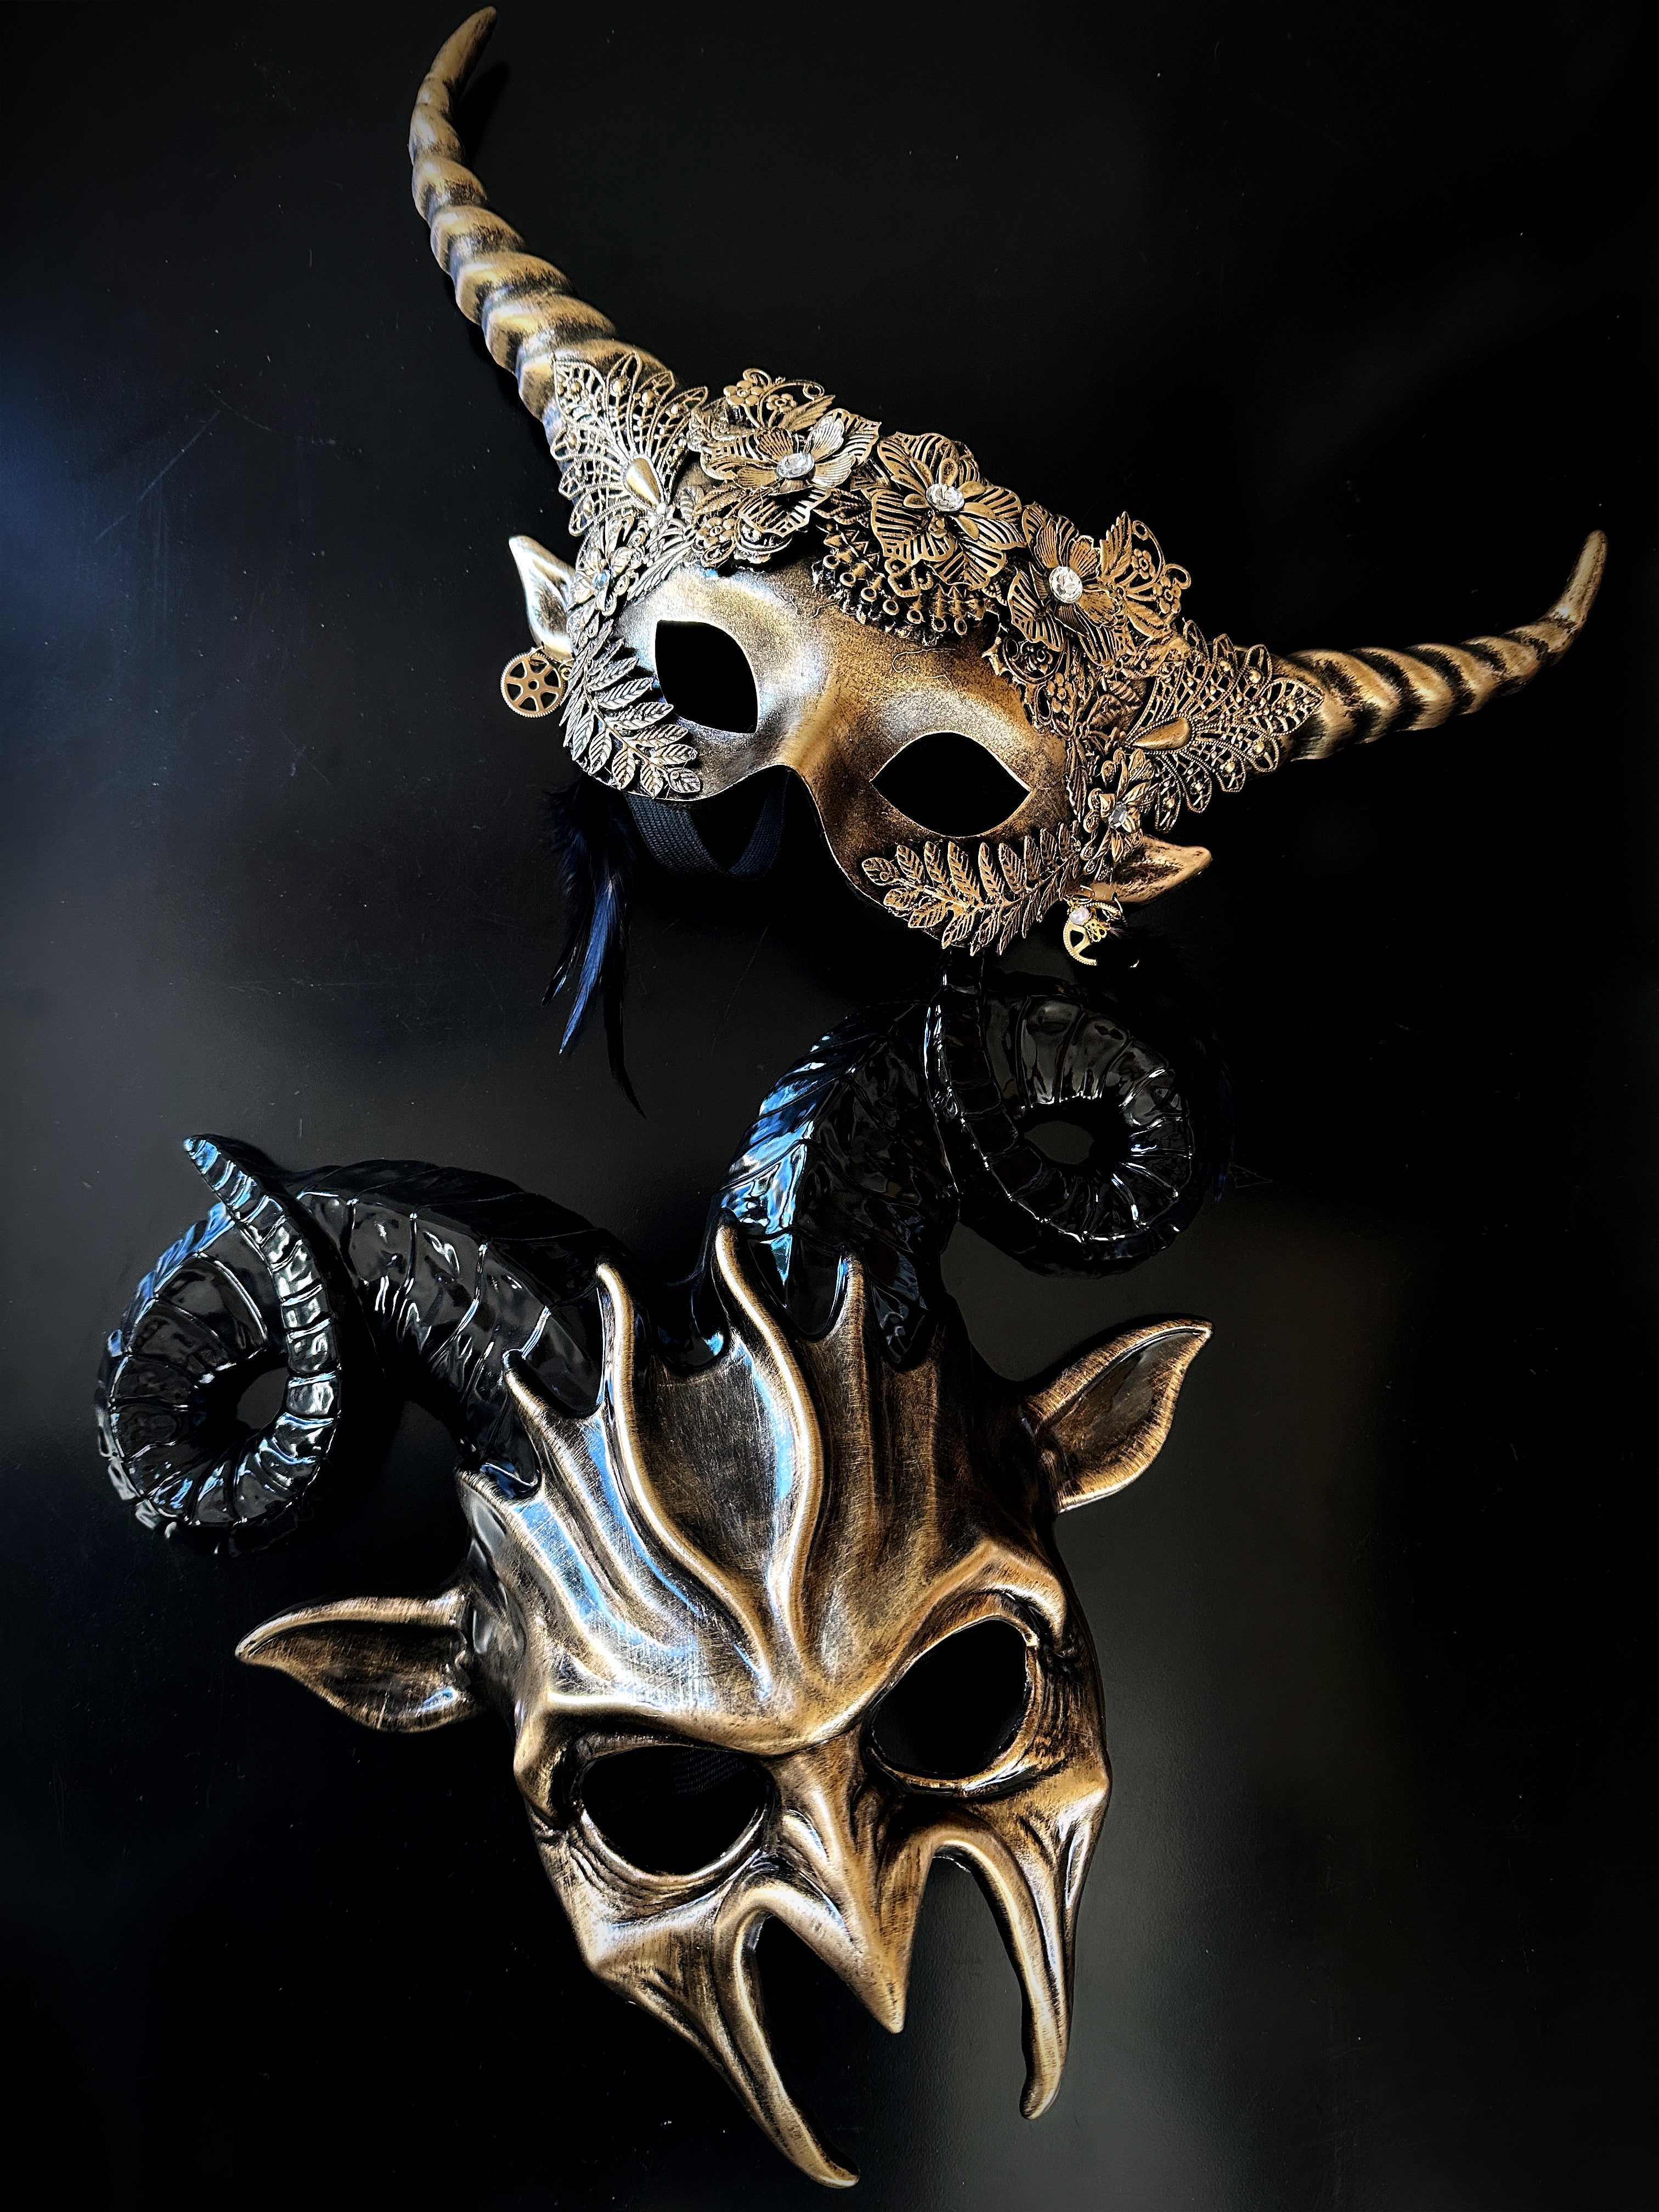 Masquerade Mask, Gold Masquerade Mask, Masquerade Ball Masks